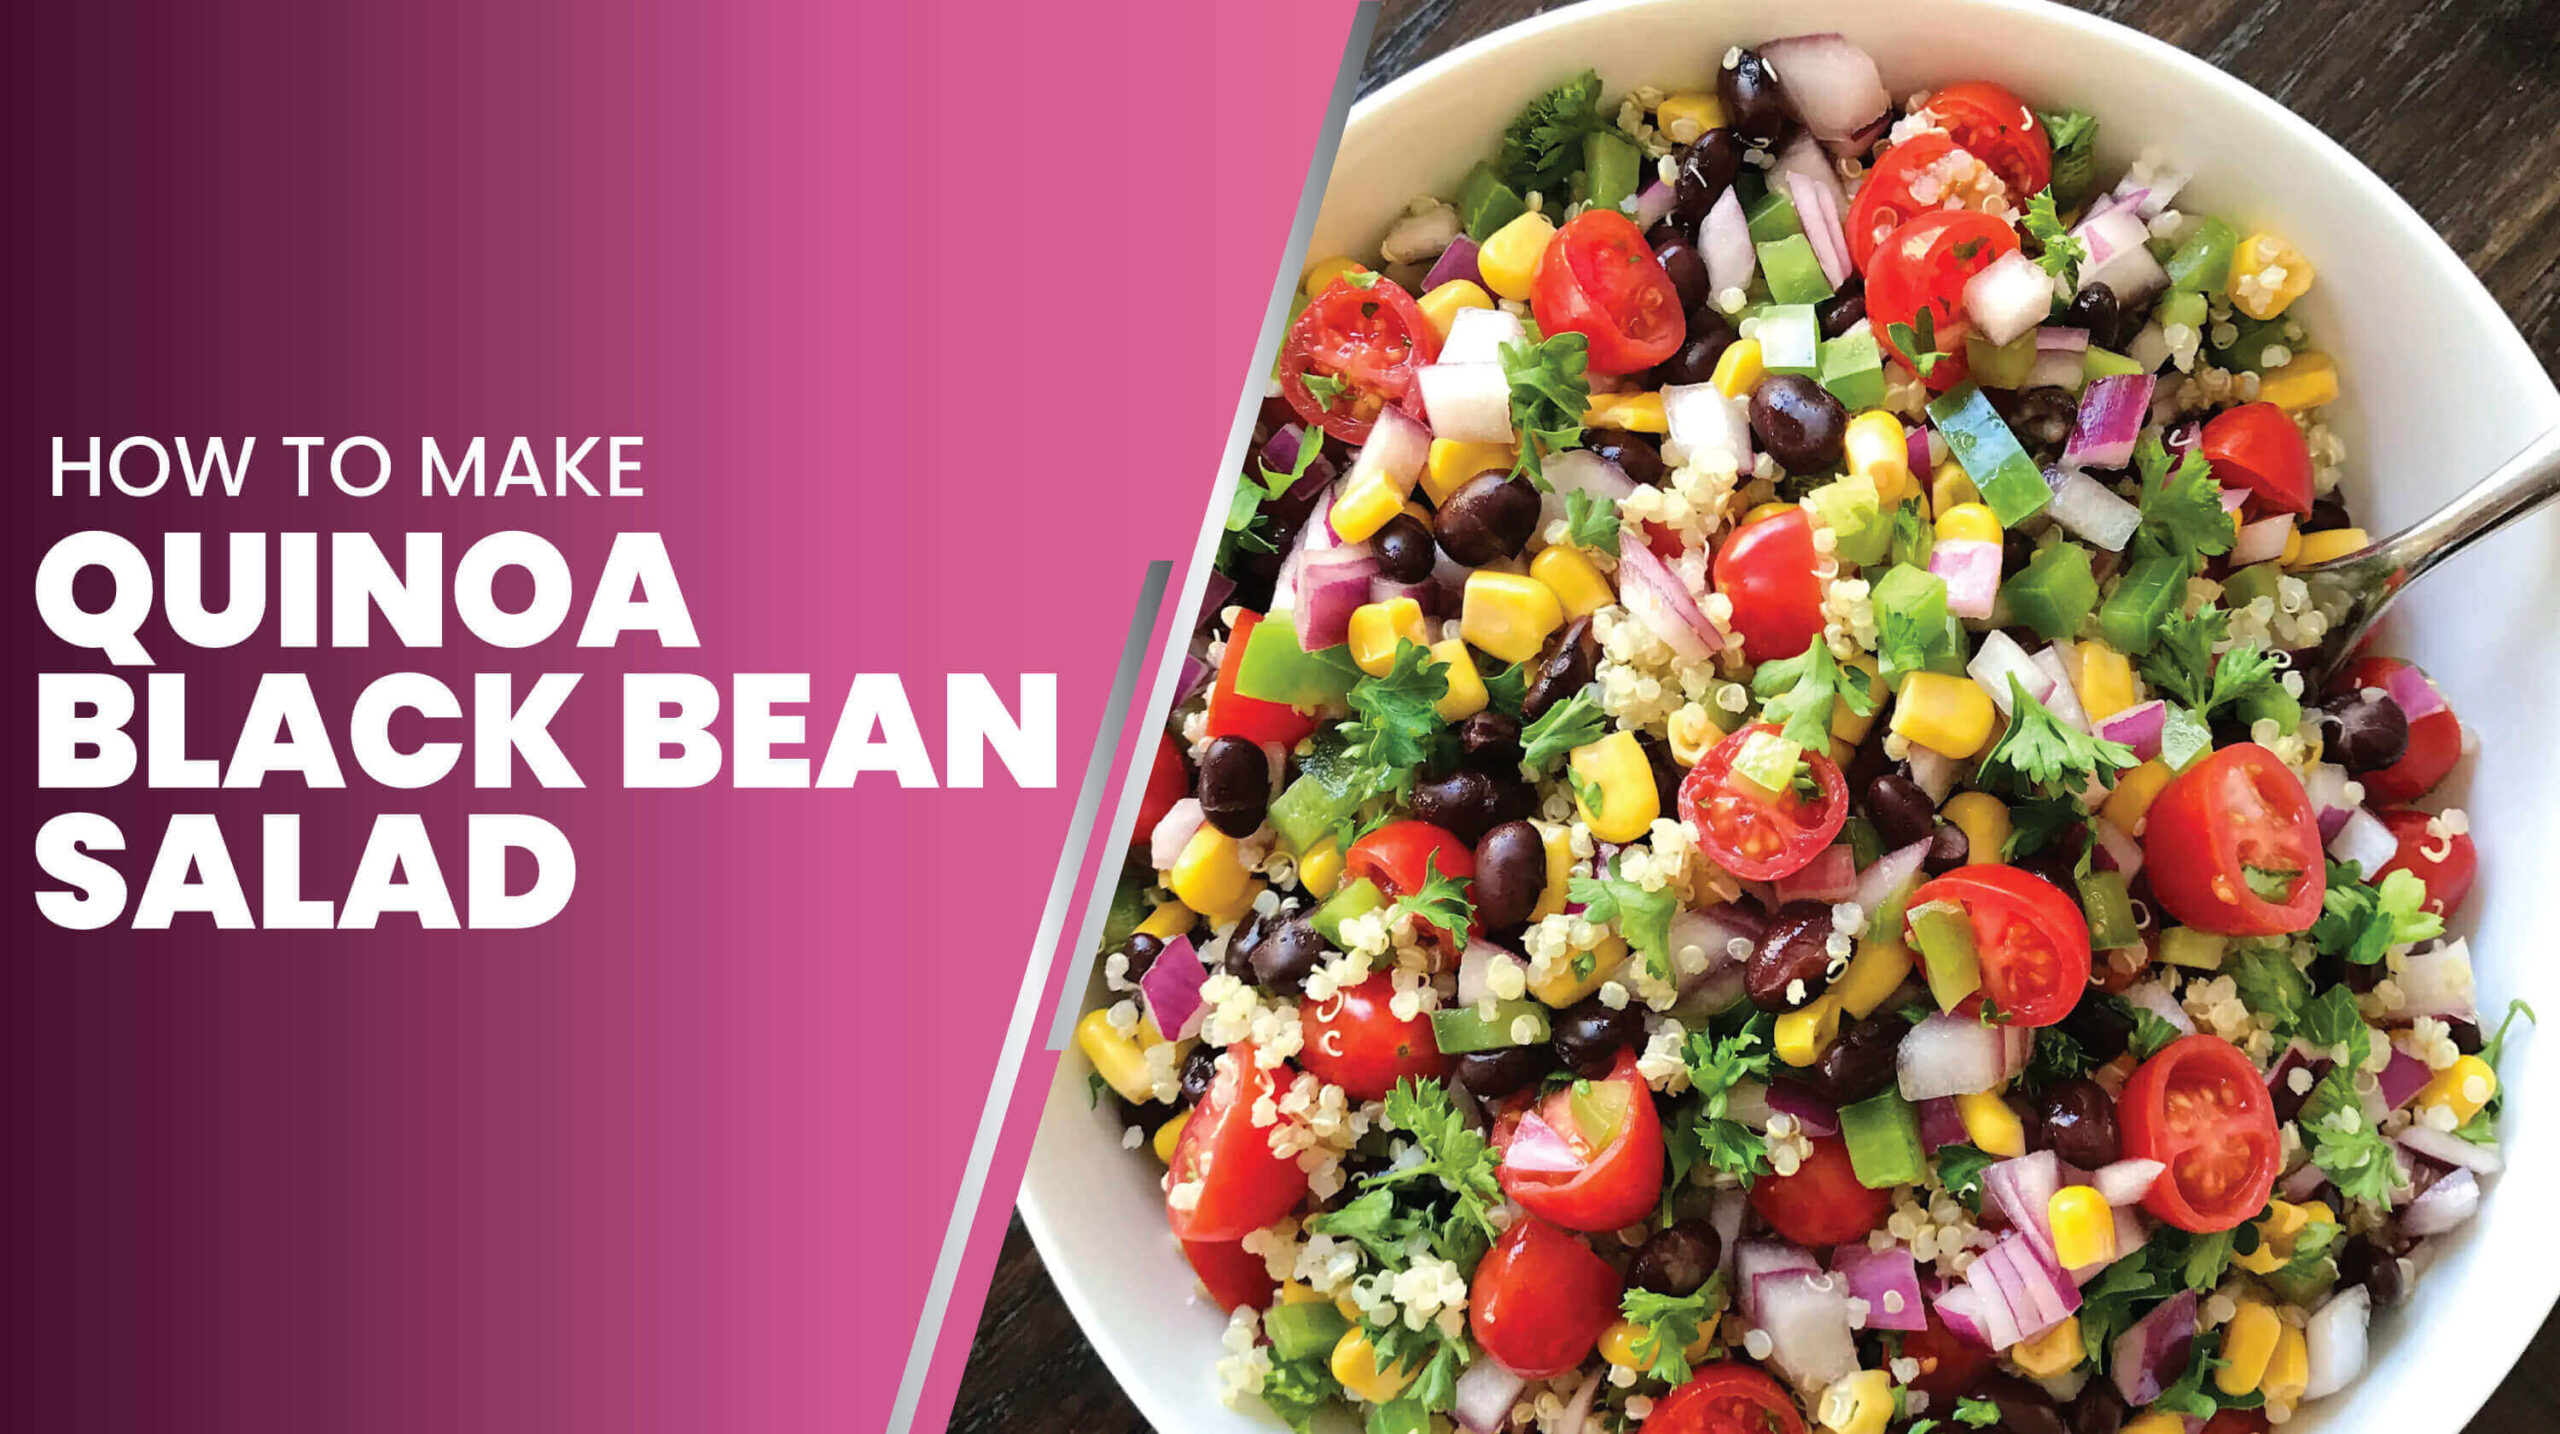 Quinoa Black Bean Salad Recipe scaled